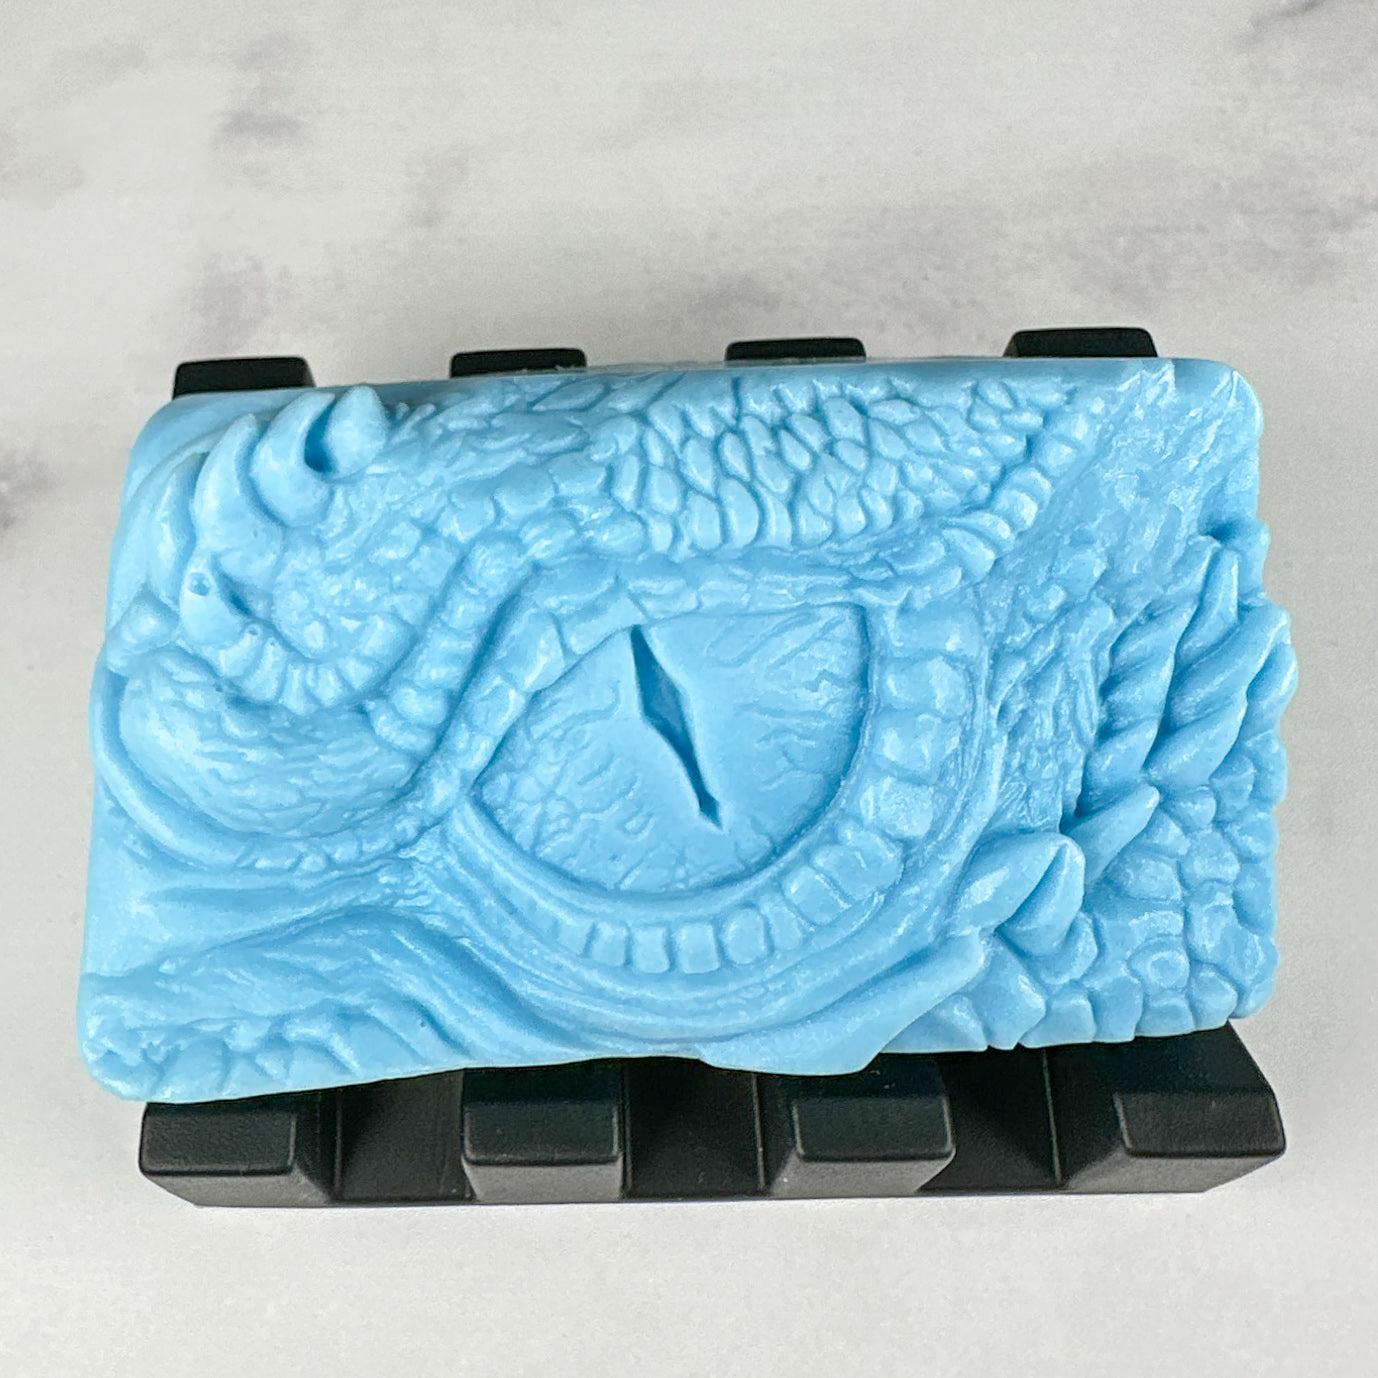 Dragon's Eye Soap Bar I